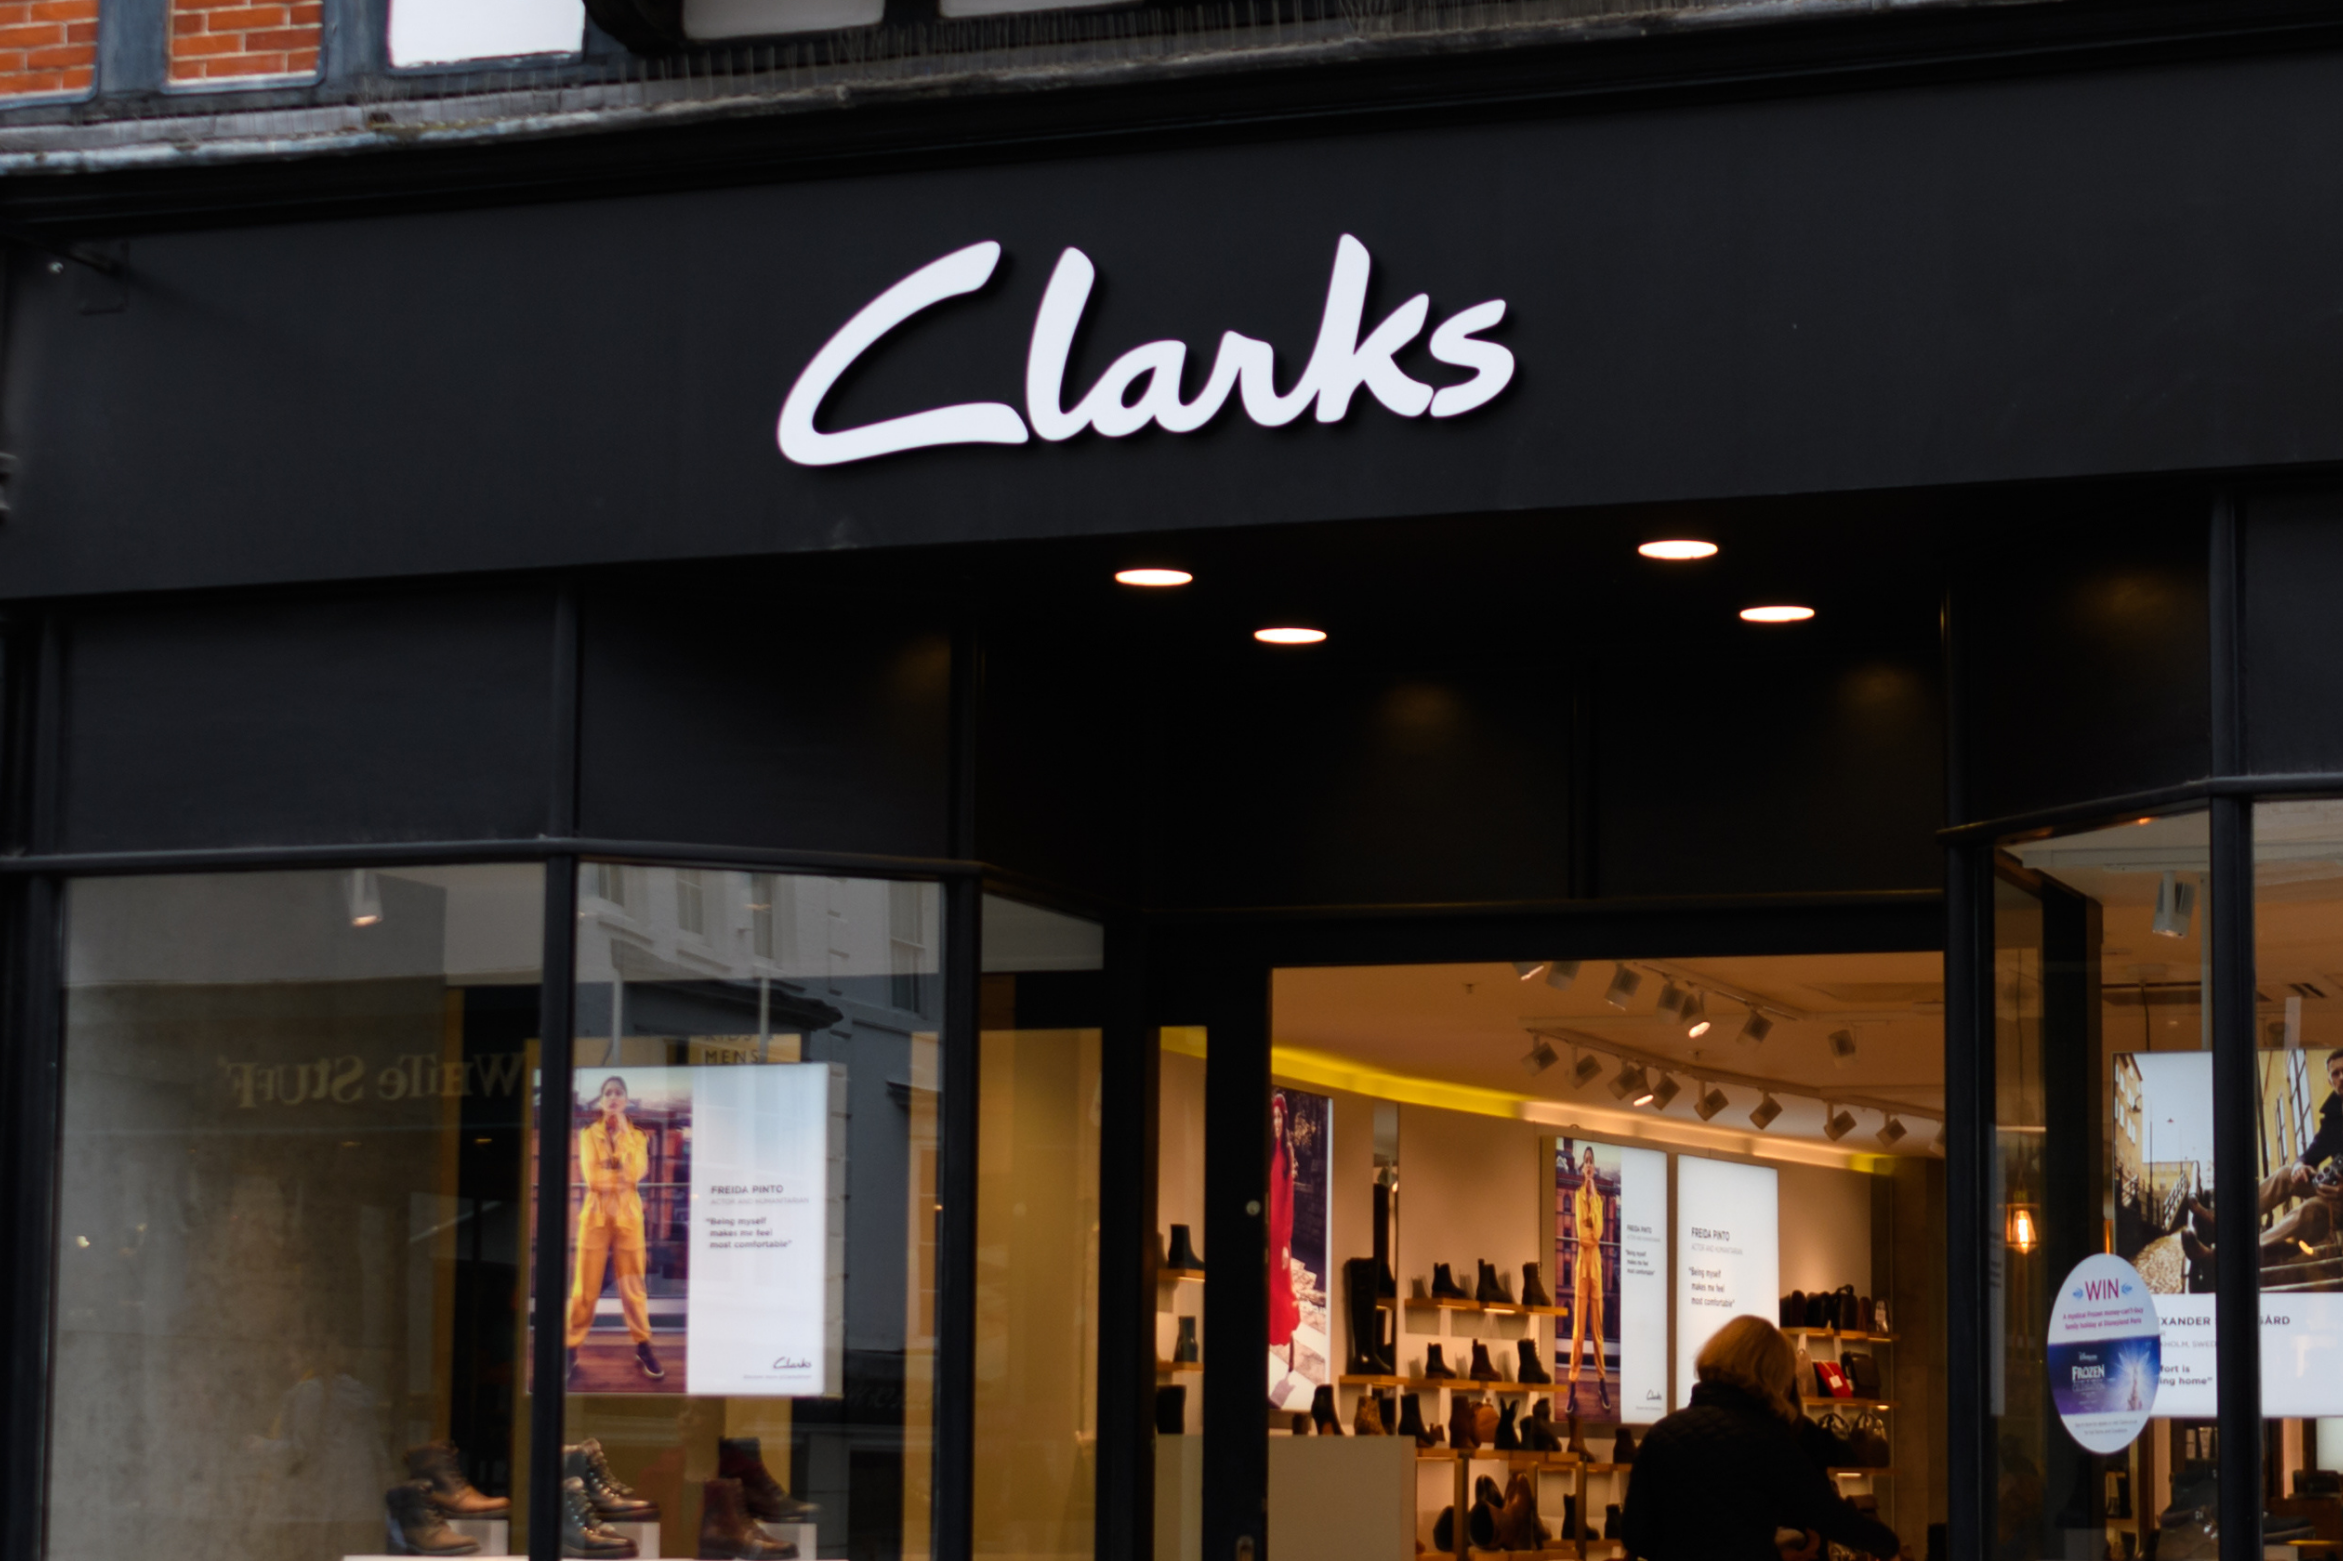 clarks shops glasgow